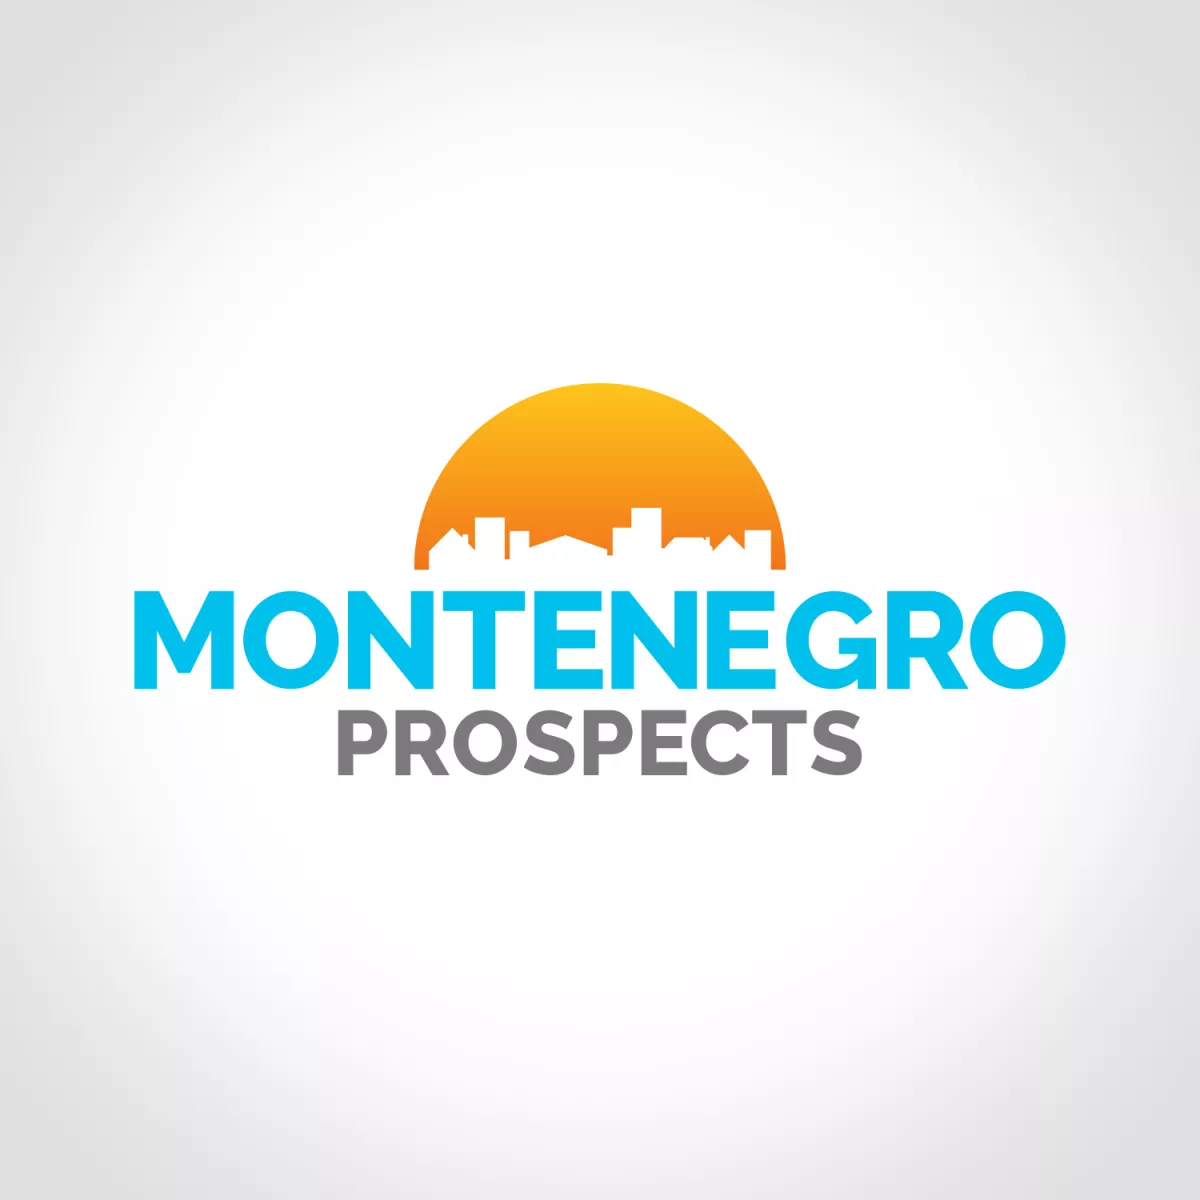 Montenegro prospects logo 1